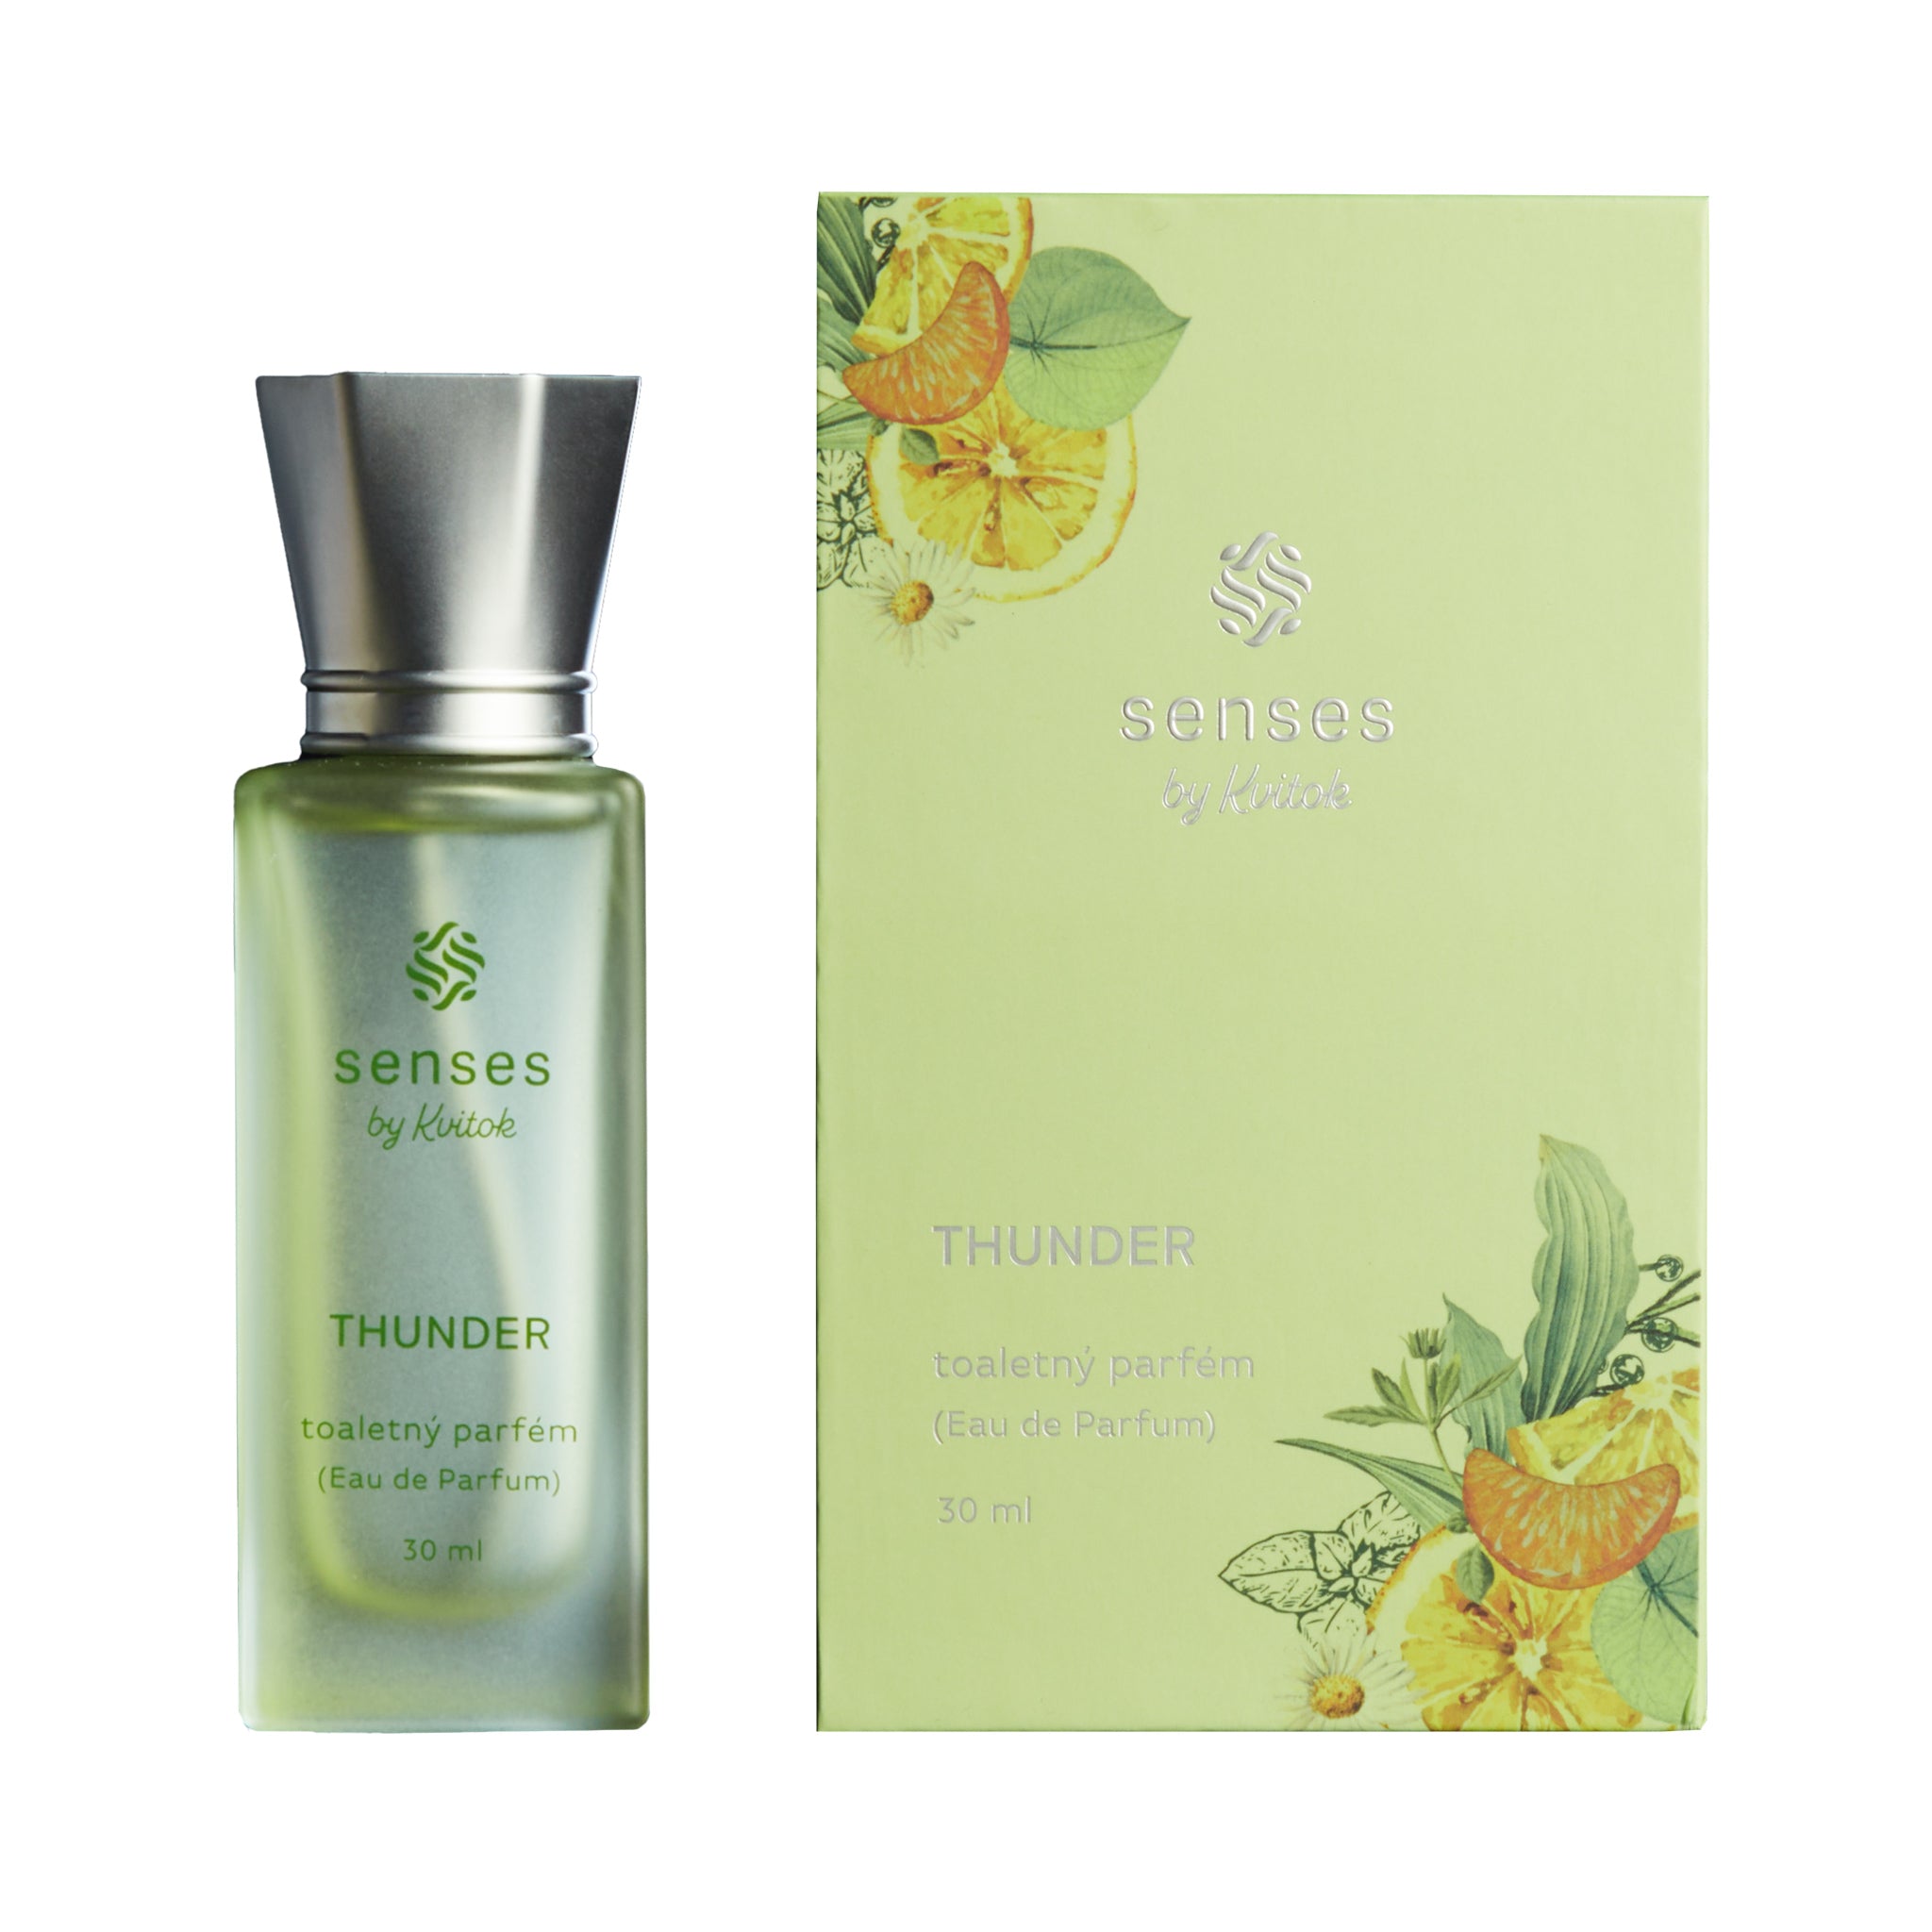 Kvitok Toaletní parfém Thunder (30 ml) - zelená unisex vůně Kvitok